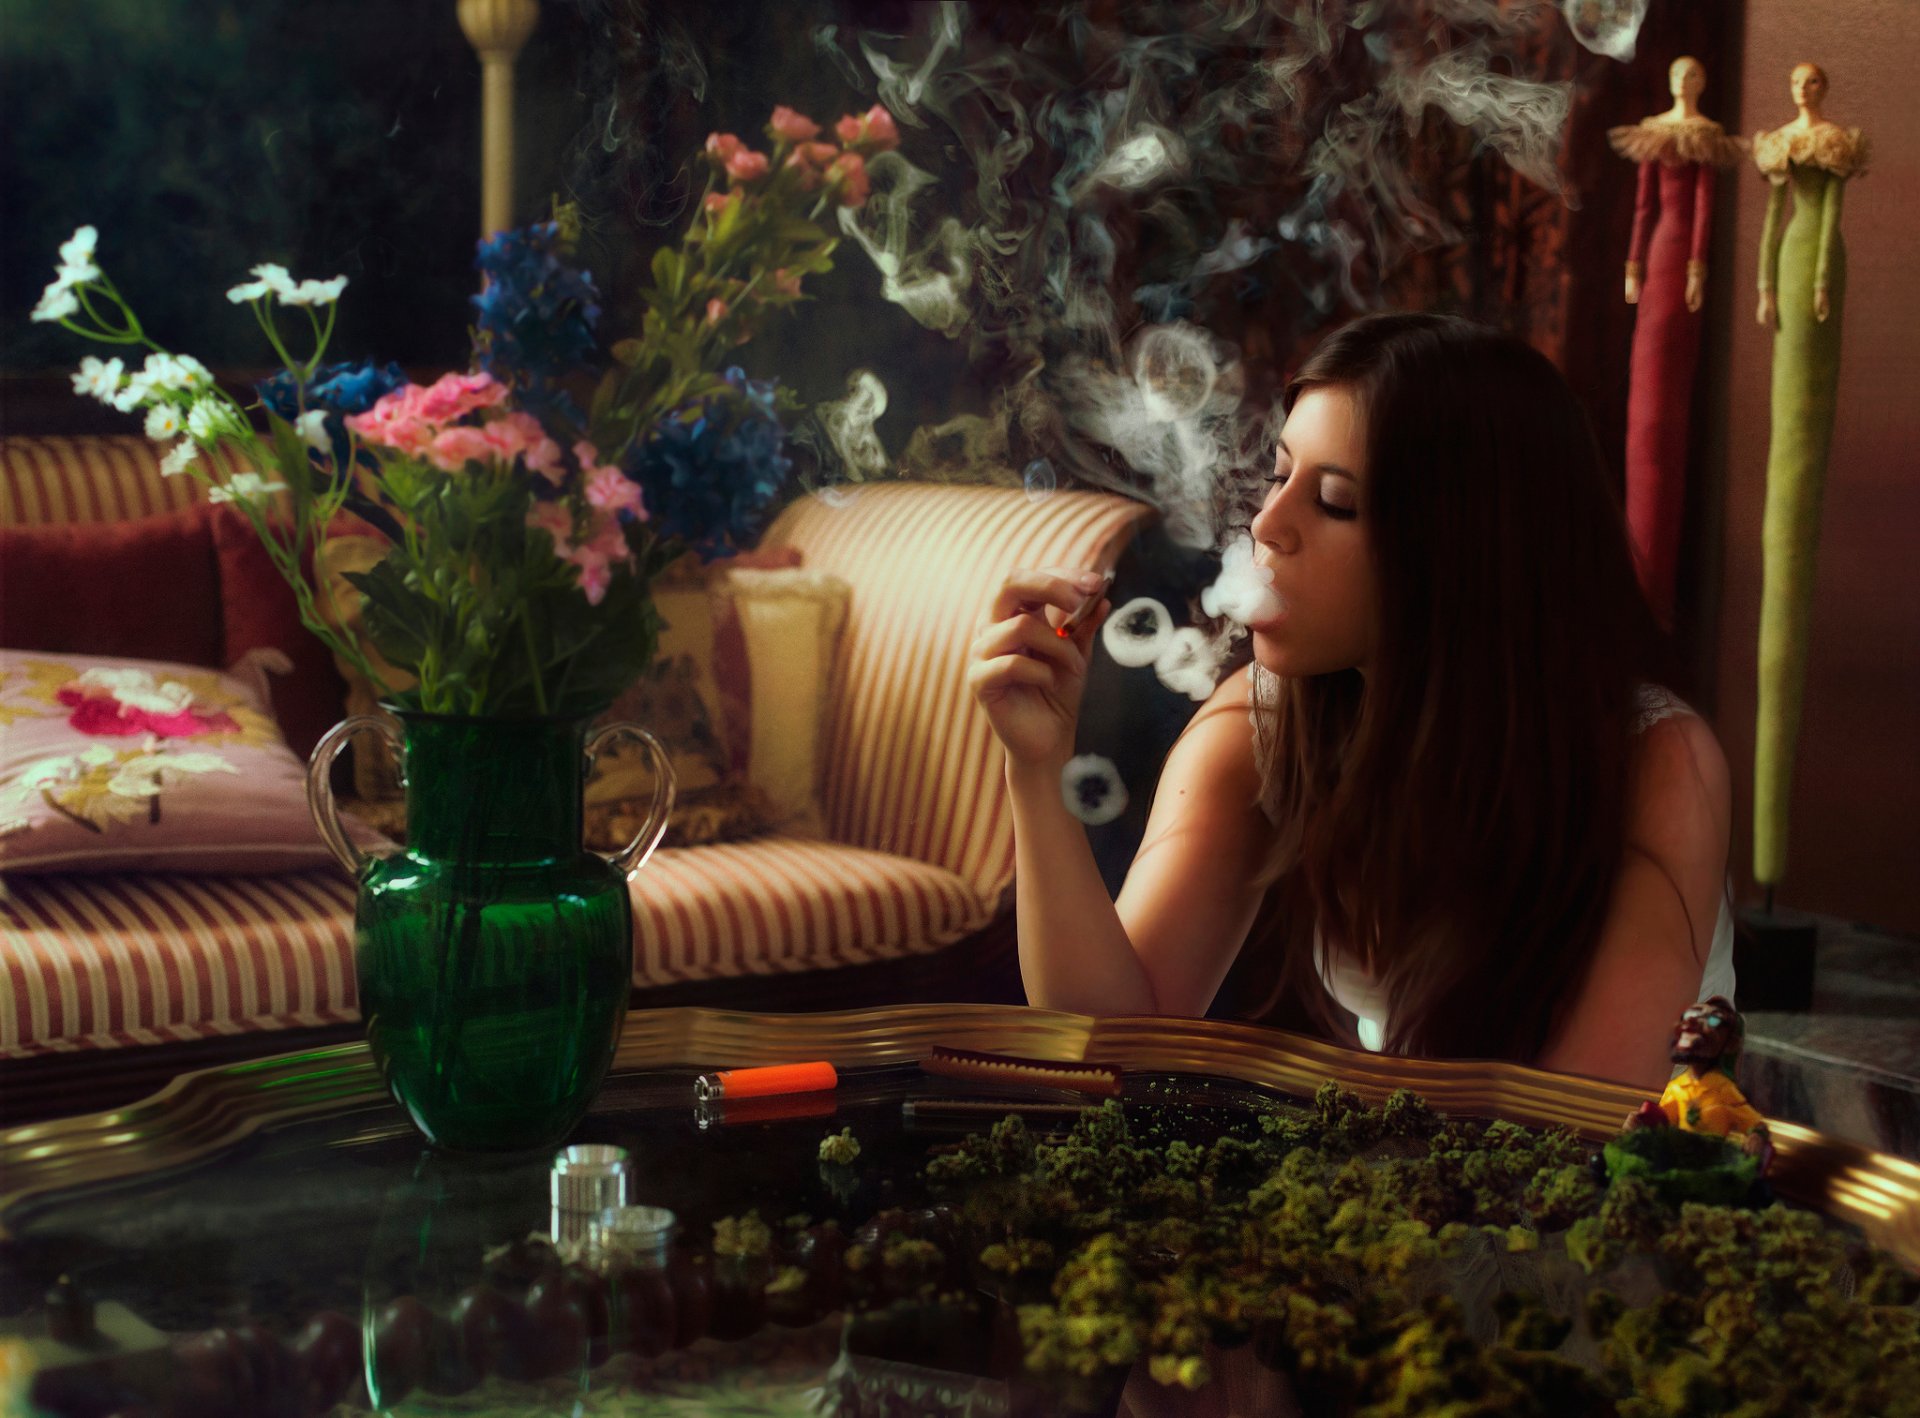 Курящая девушка выпускает дым кольцами Обои на рабочий стол.